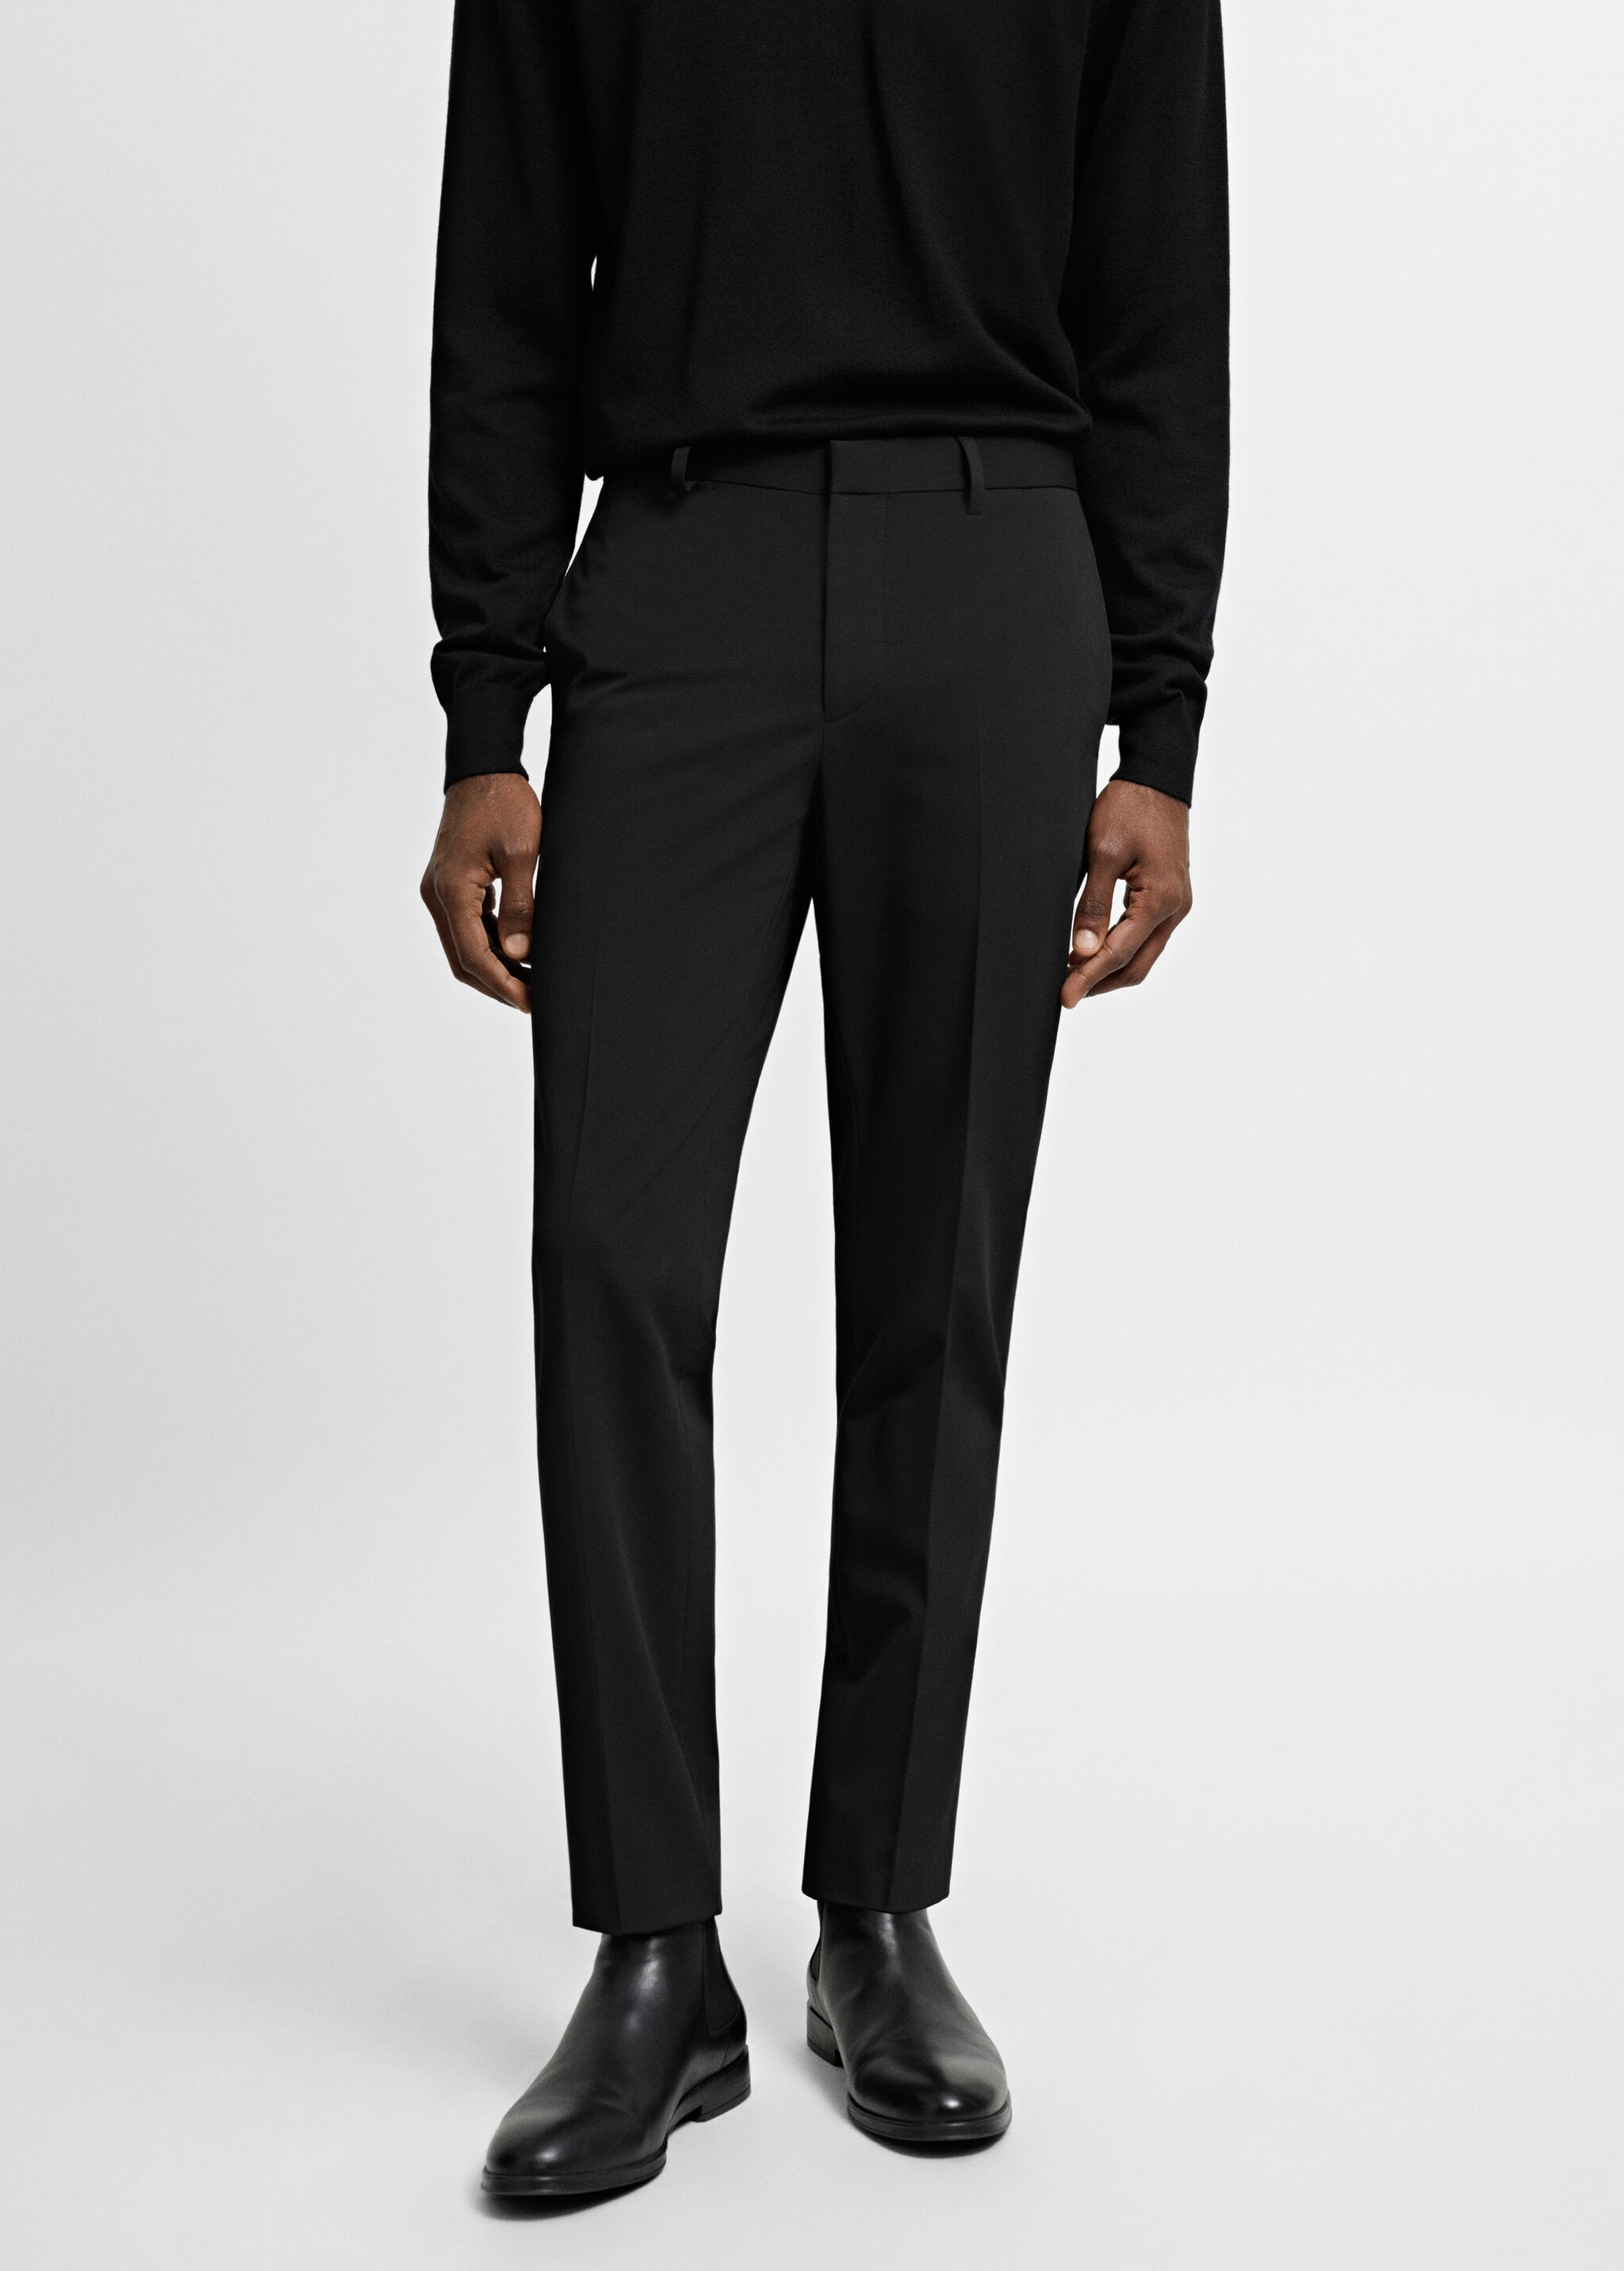 Stretch fabric super slim-fit suit trousers - Medium plane